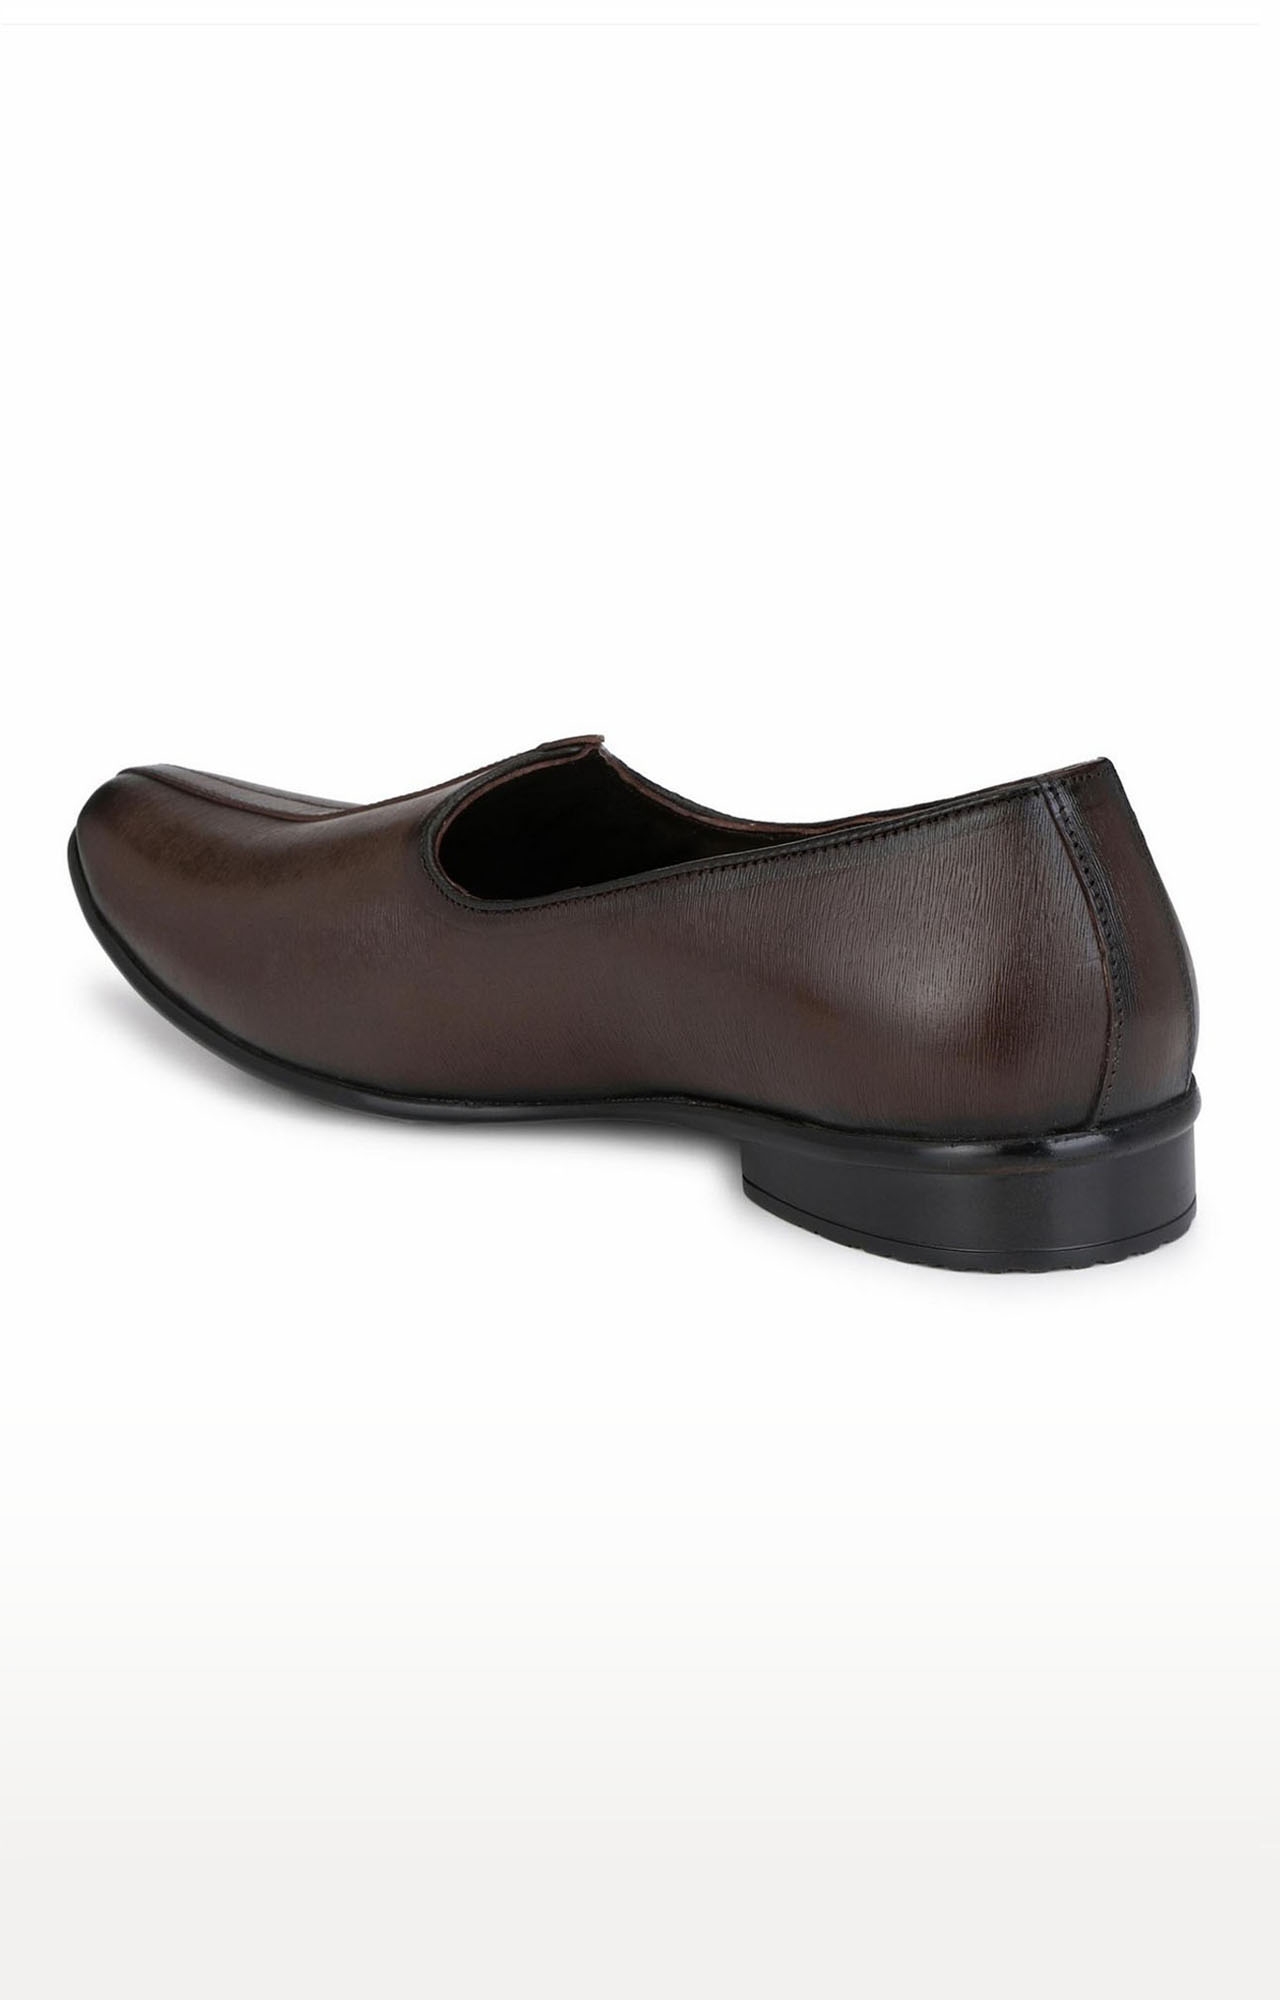 Hitz | Hitz Brown Leather Slip-On Formal Shoes for Men  1